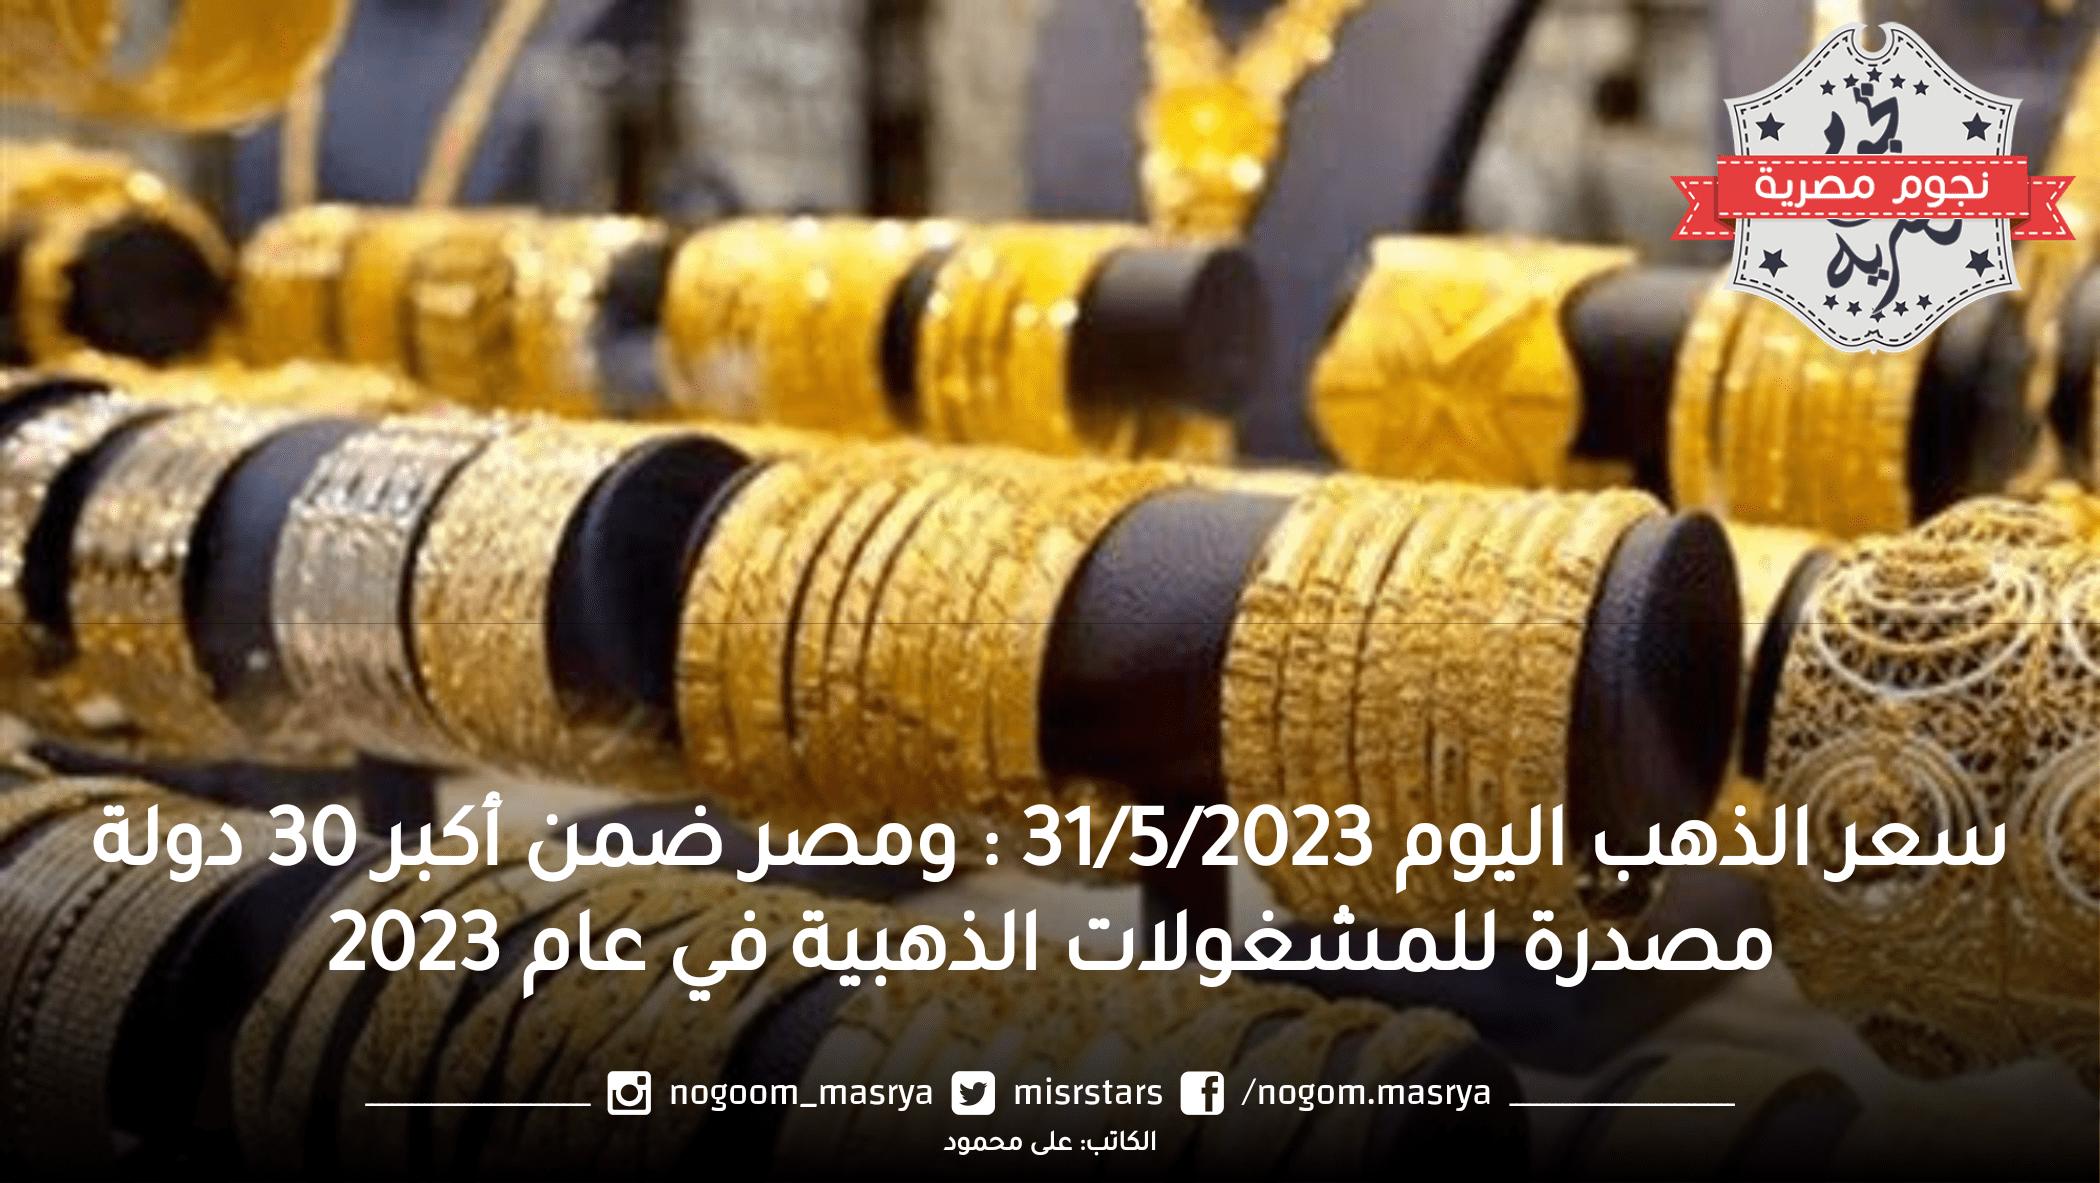 سعر الذهب اليوم 31/5/2023 .. ومصر ضمن أكبر 30 دولة مصدرة للمشغولات الذهبية